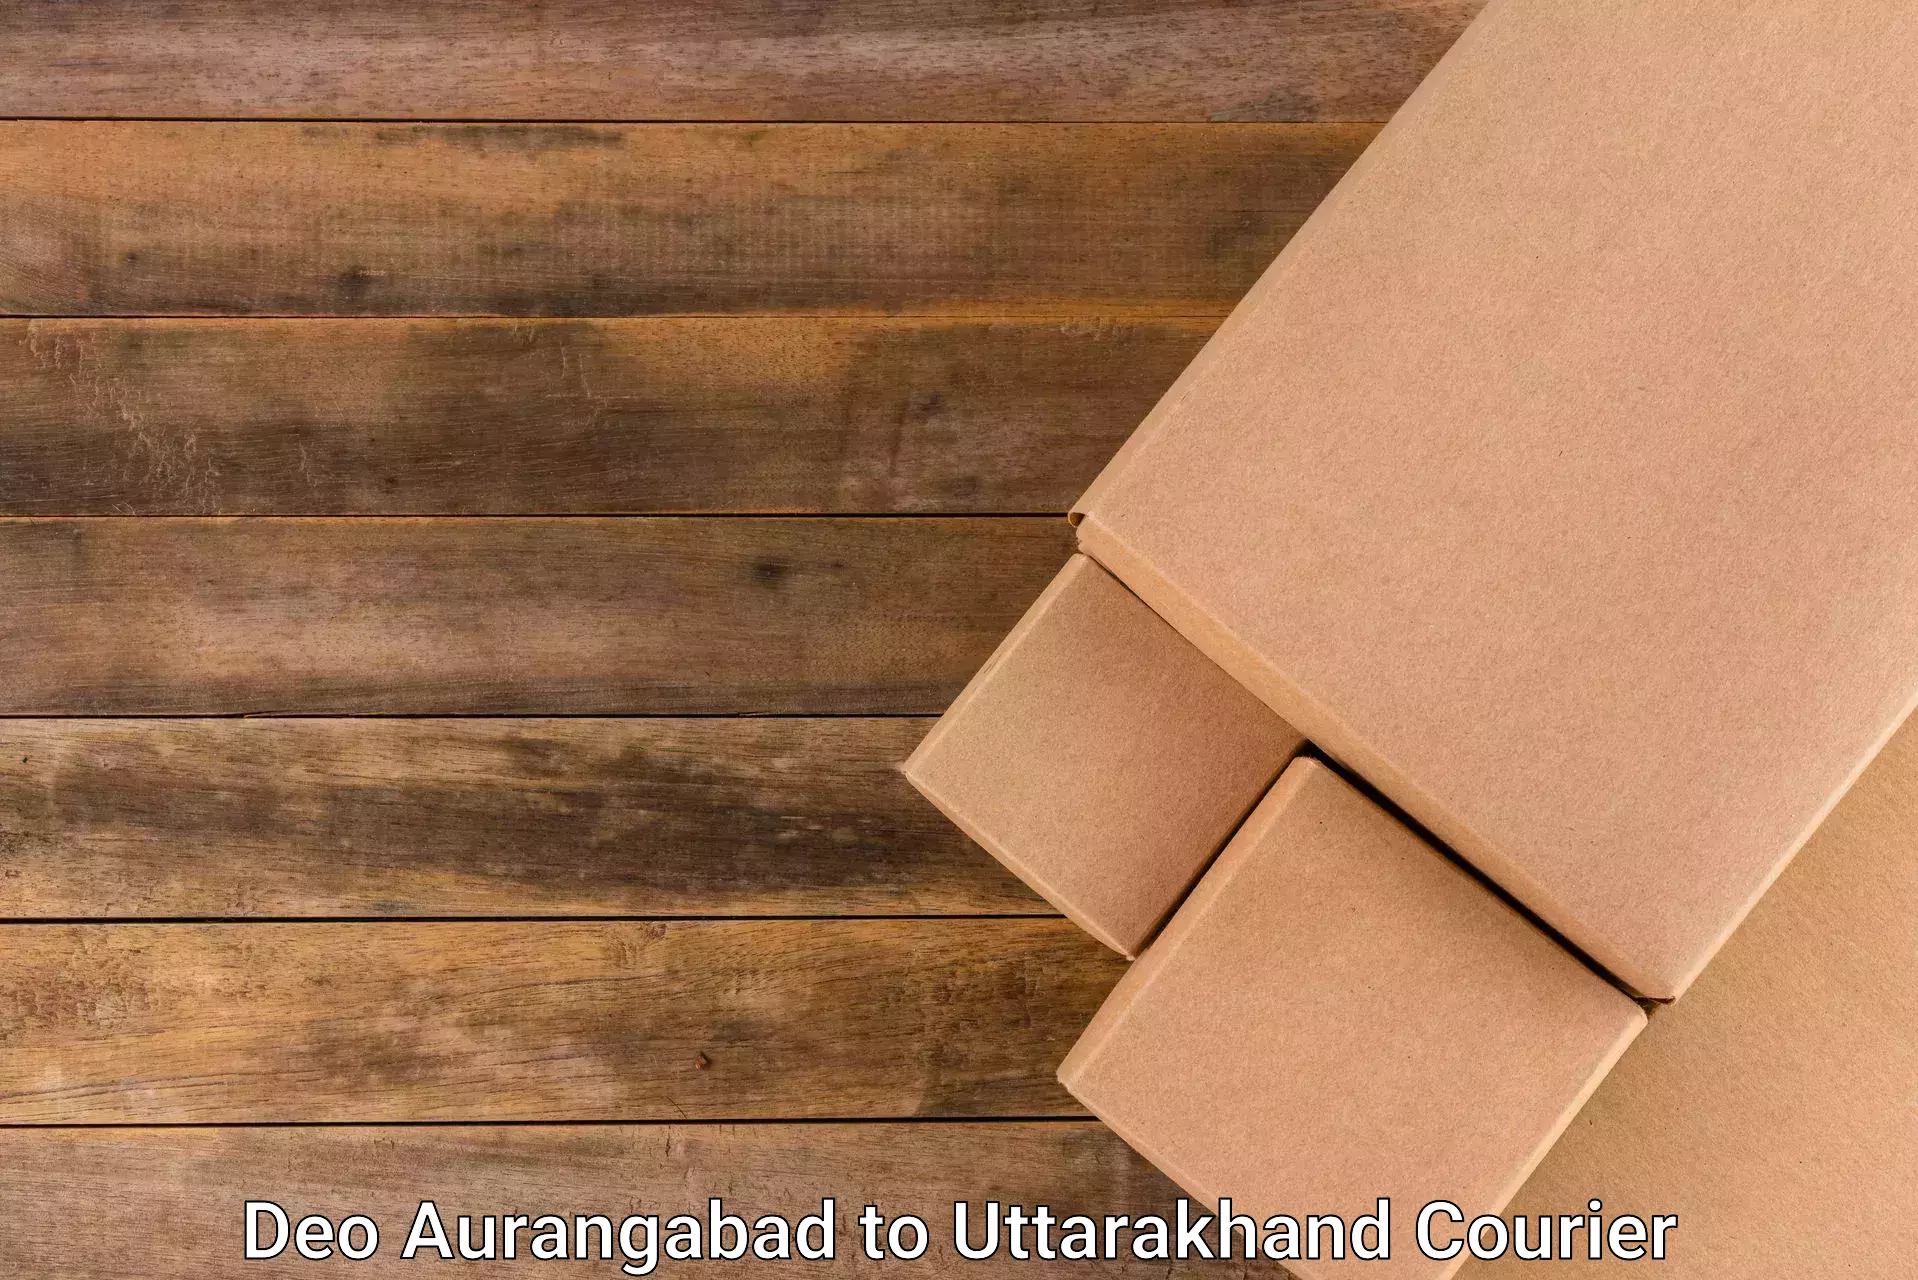 Custom courier packages Deo Aurangabad to Uttarakhand